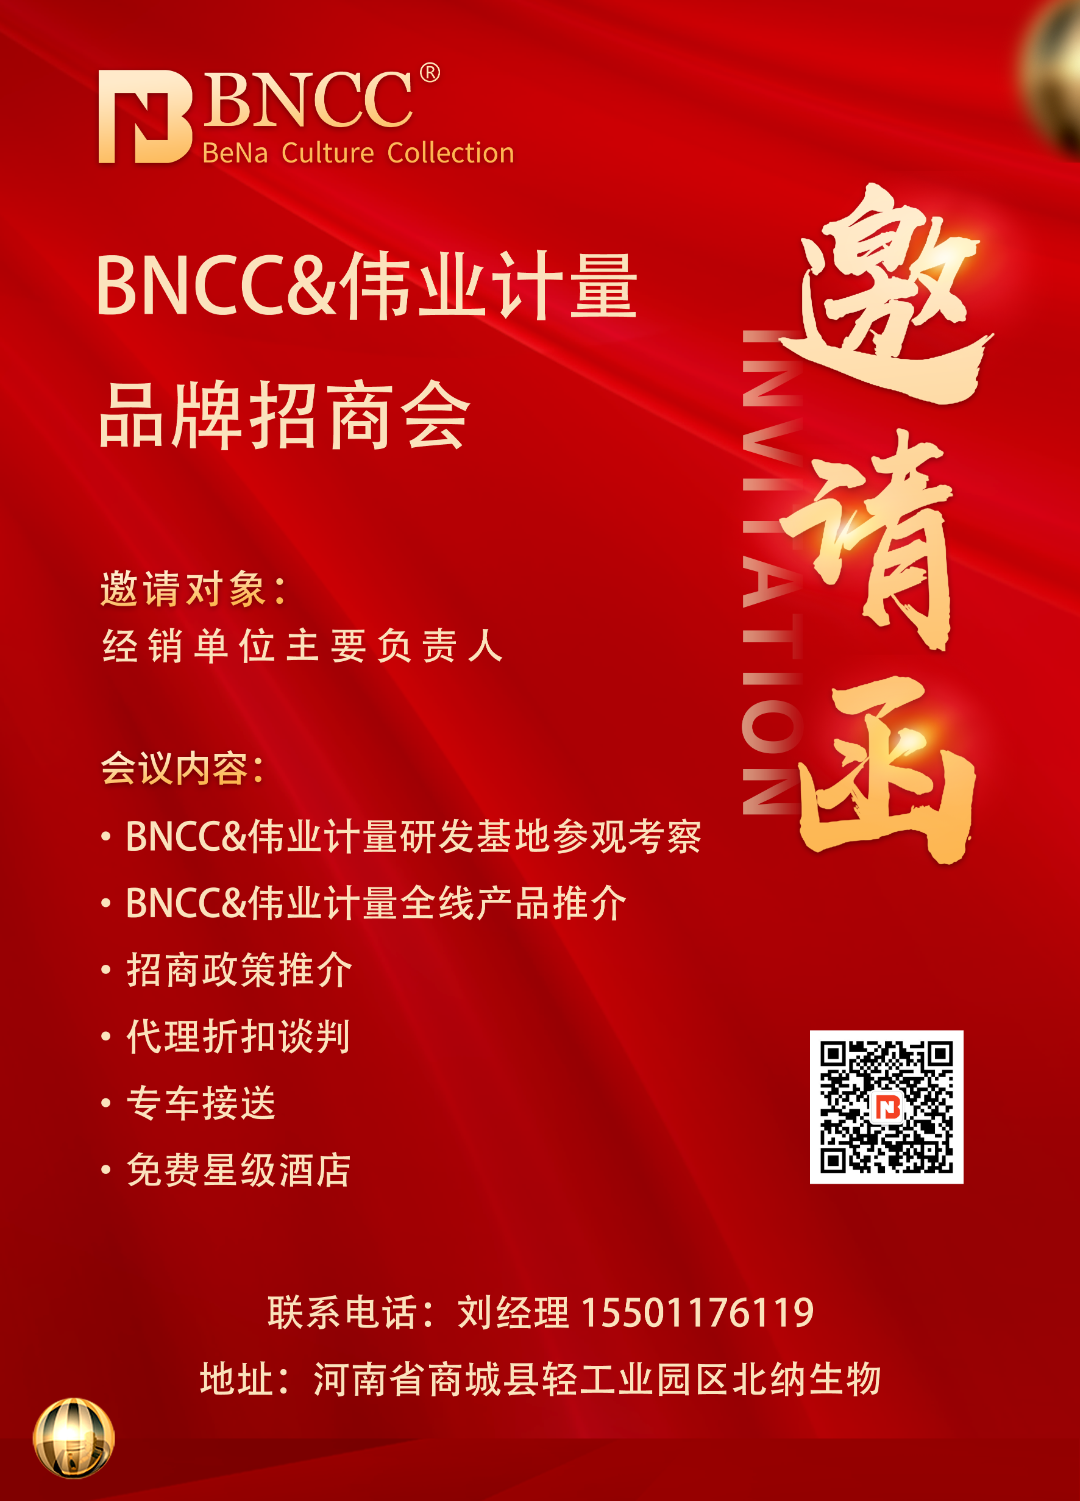 【招商邀请】BNCC品牌招商会每周六与您相约，携手共创行业新篇章！